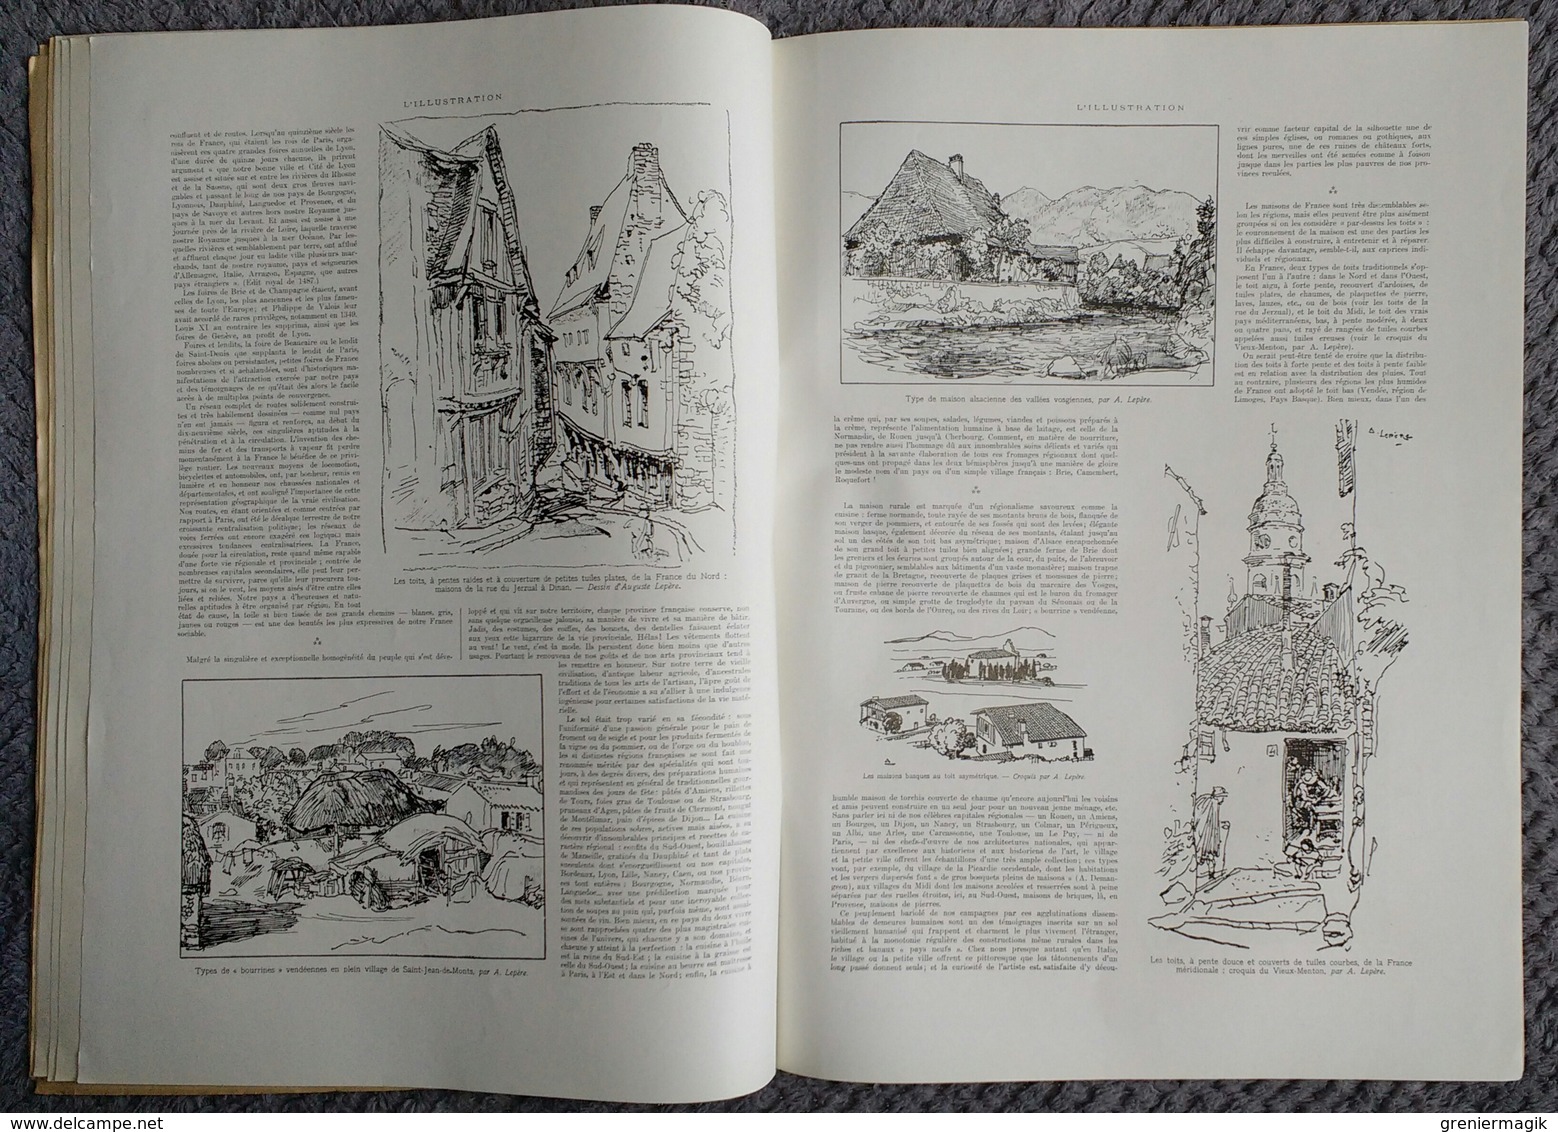 L'Illustration 4032 12 juin 1920 Château de la Monteillerie/Semur en Auxois Domme par Auguste Lepère/Paquebot Souirah